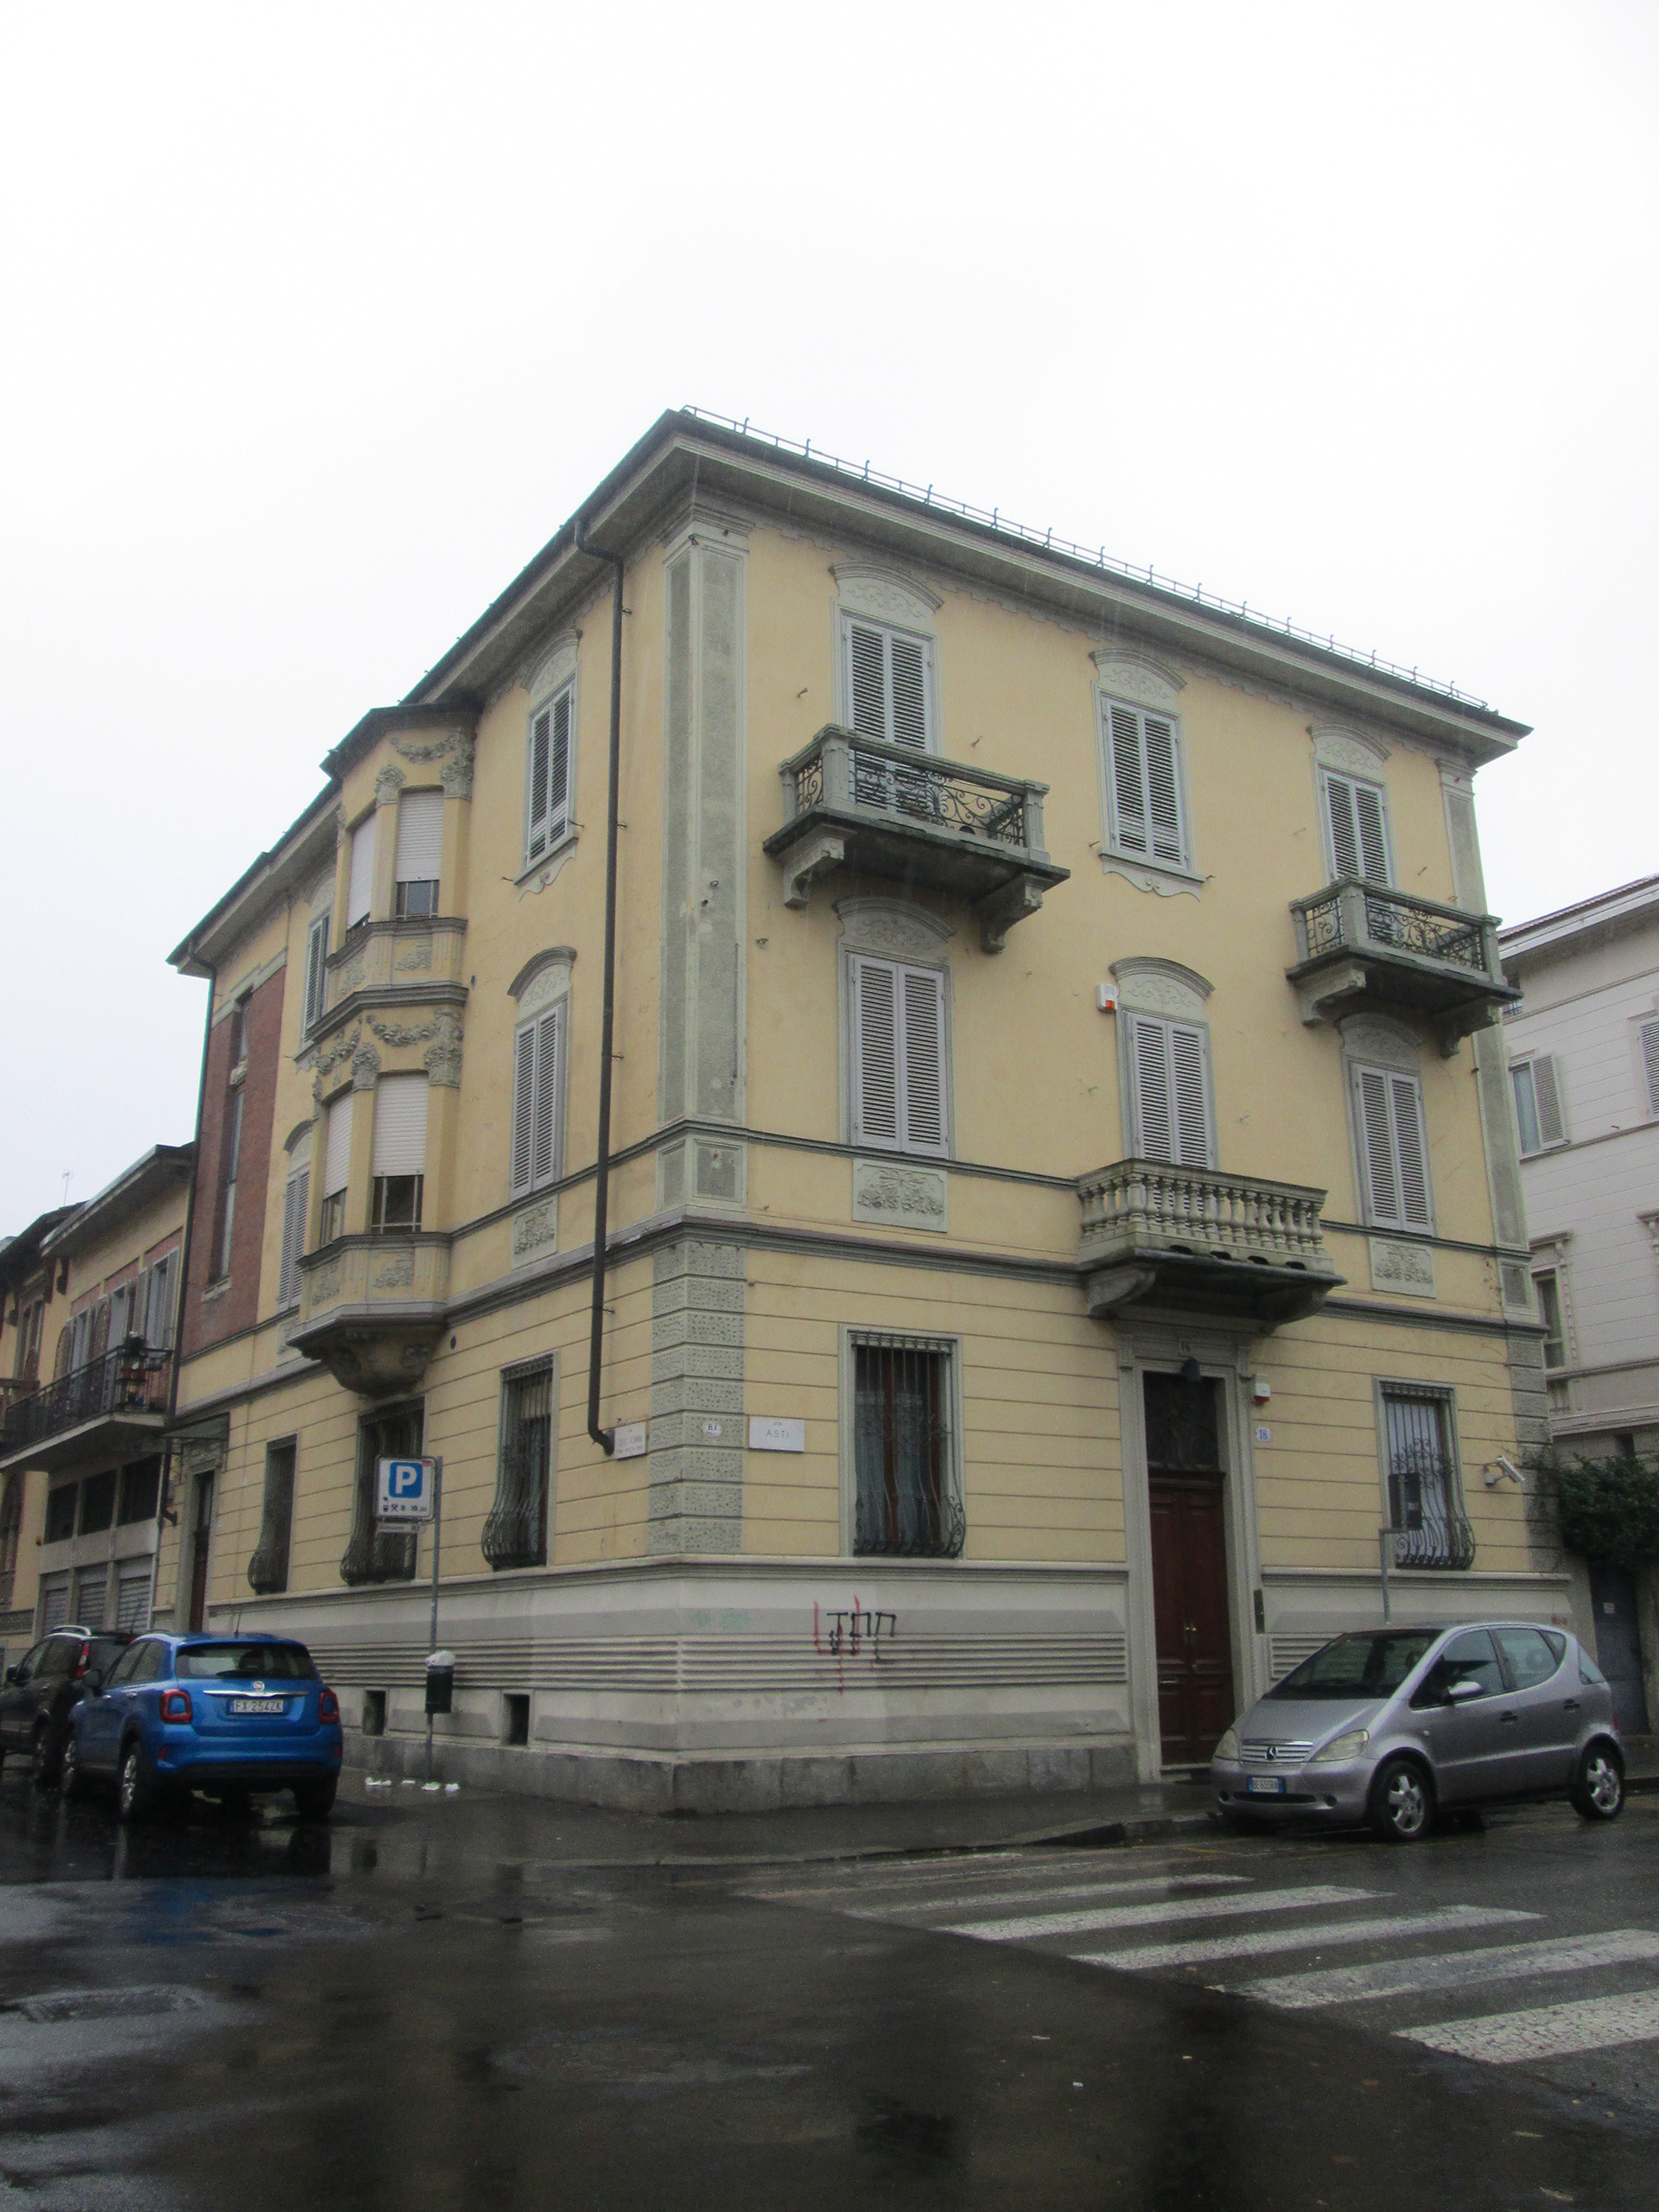 Edificio di abitazione civile - Casa Qualia (casa, privata) - Torino (TO) 